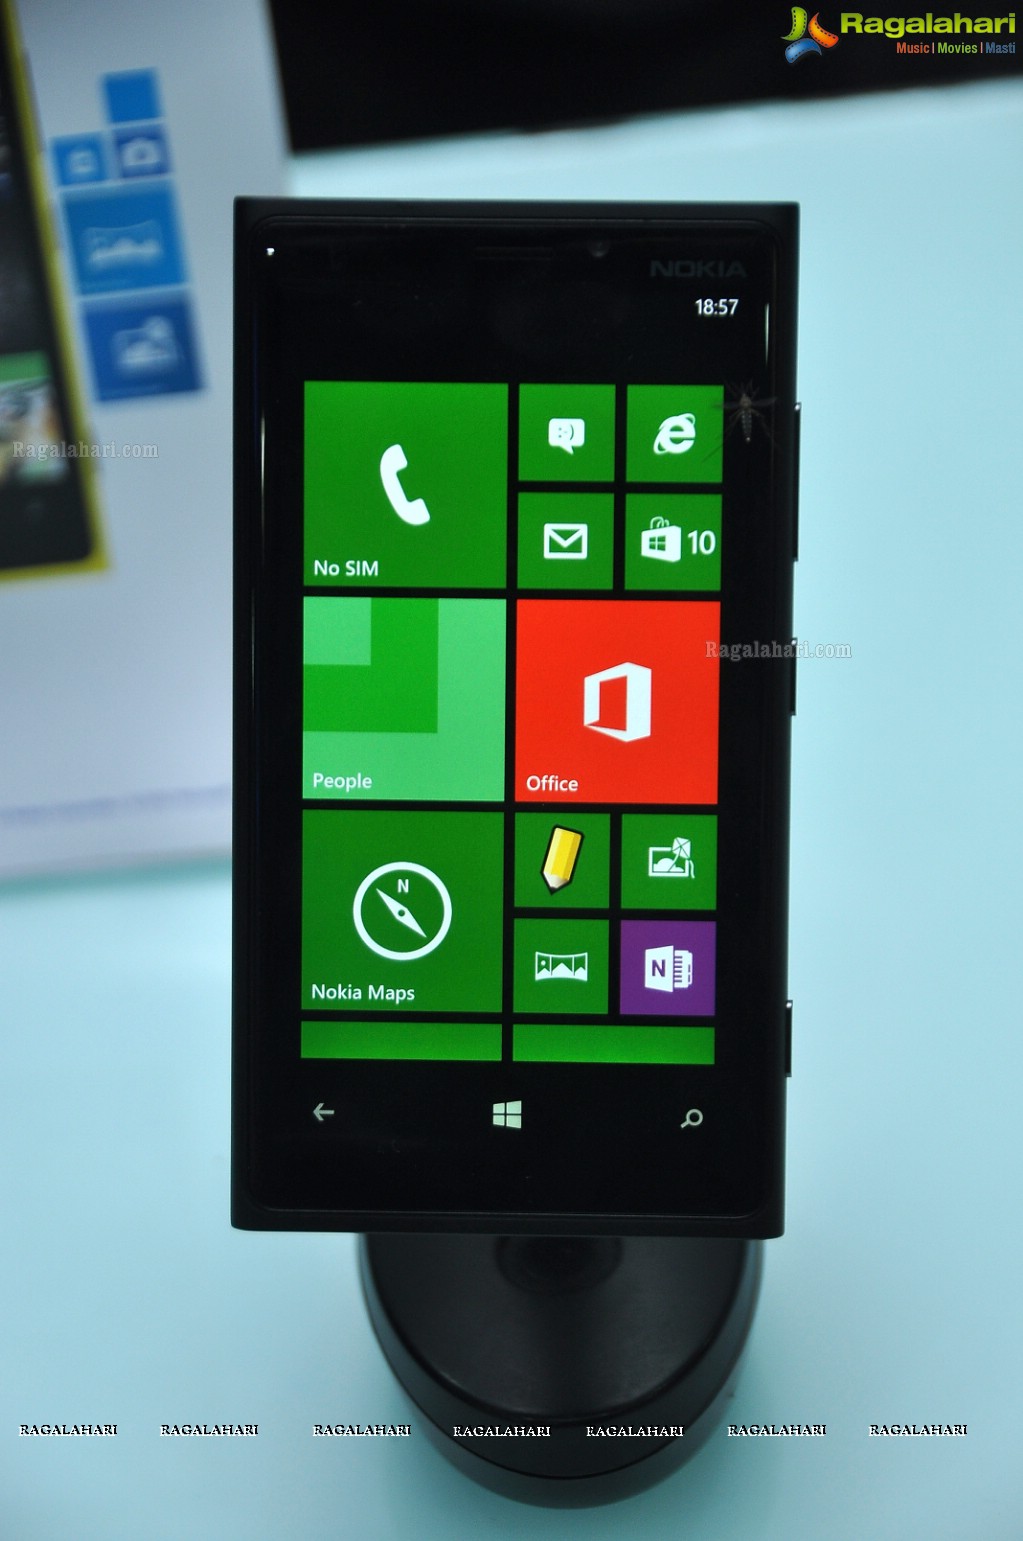 VVS Laxman launches Nokia Lumia 920 and Nokia Lumia 820, Hyderabad 